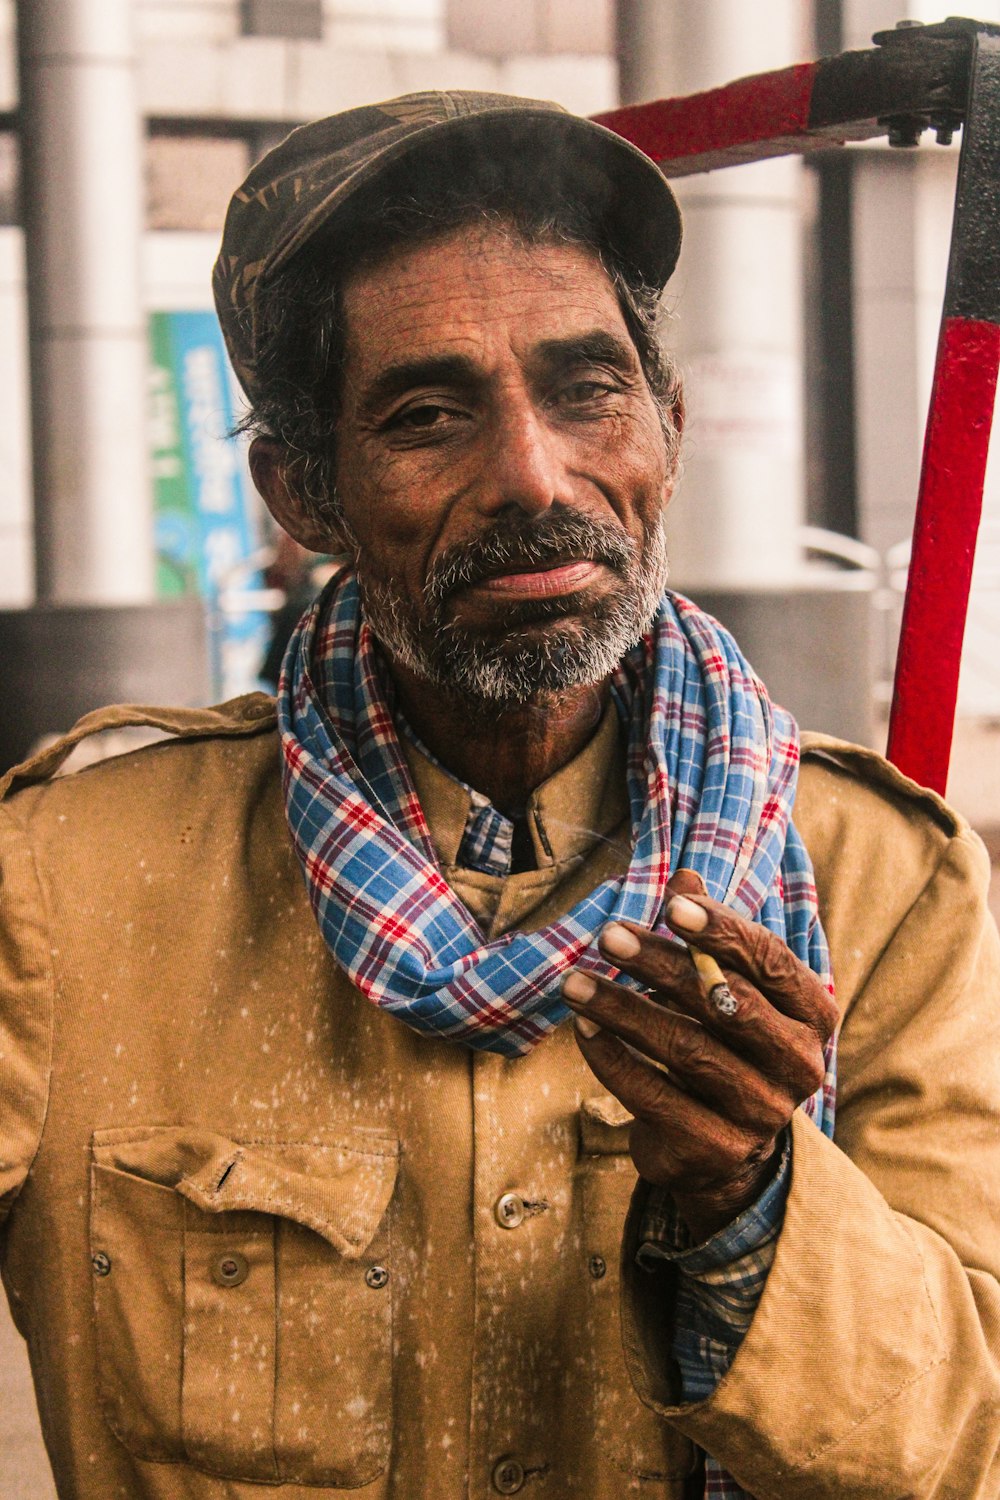 Un uomo con un cappello e una sciarpa che tiene una pipa foto –  Chhattisgarh Immagine gratuita su Unsplash